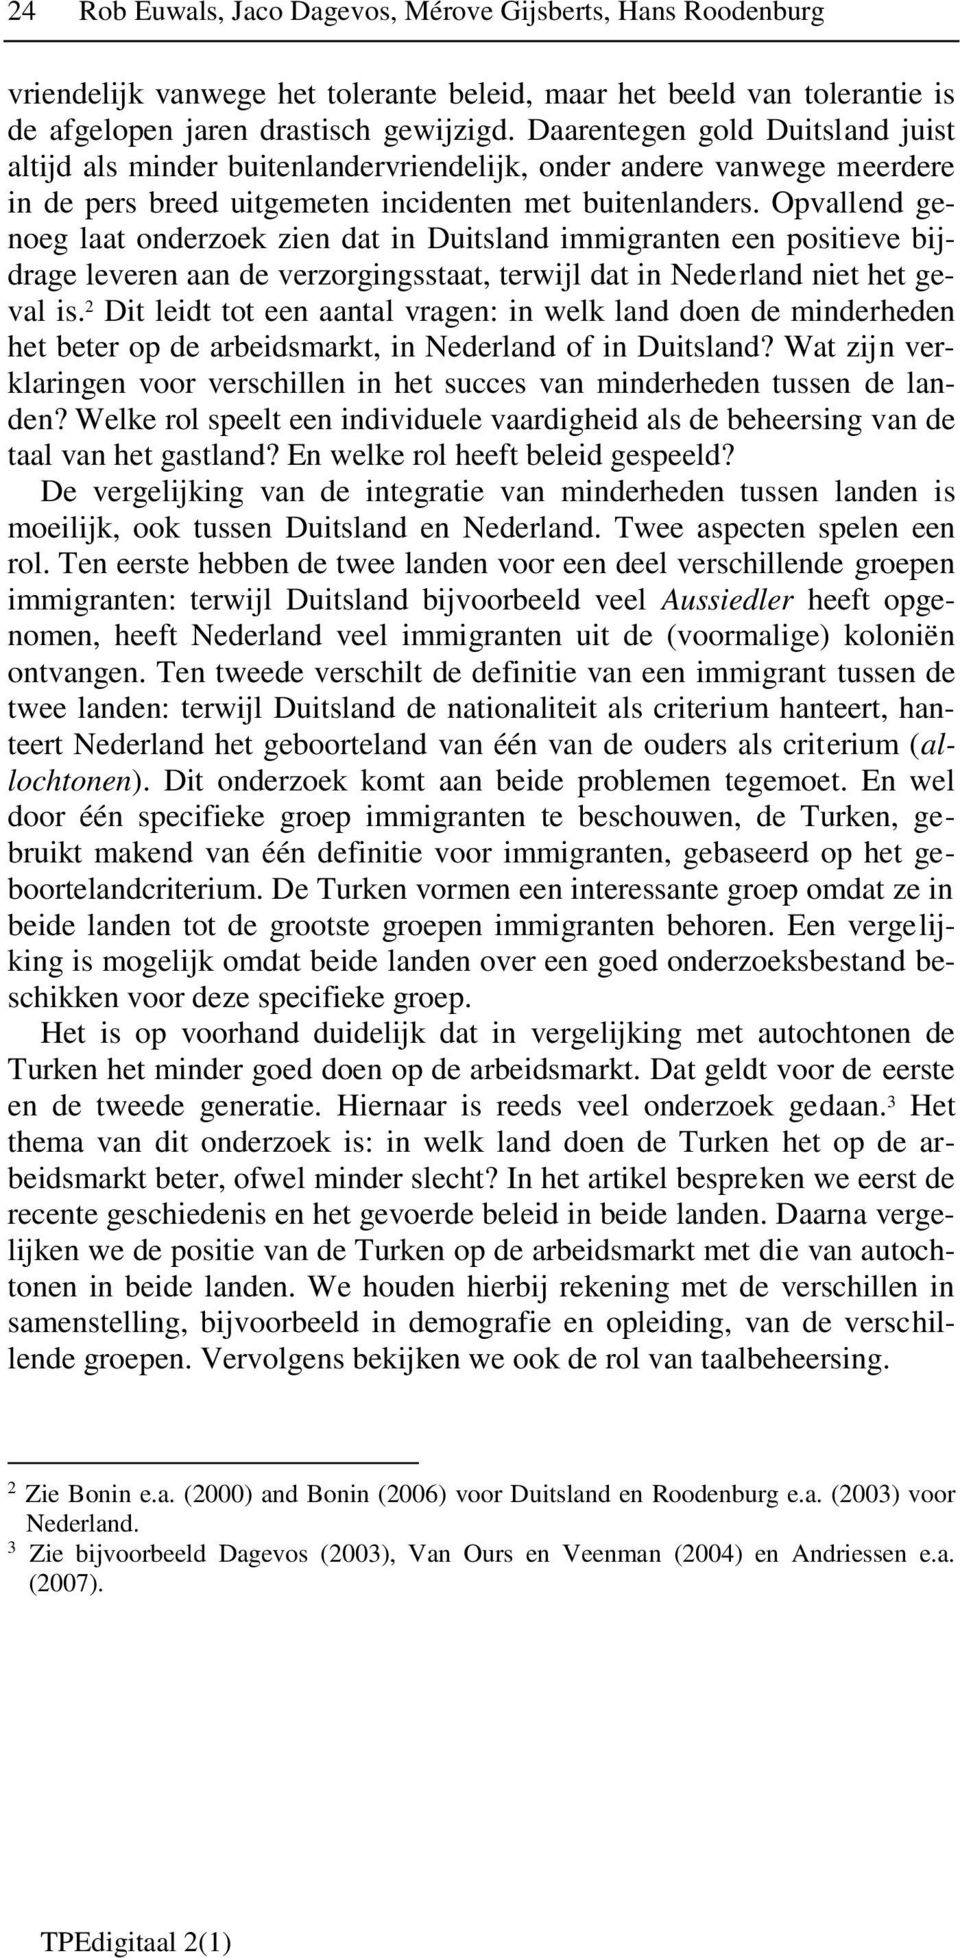 Opvallend genoeg laat onderzoek zien dat in Duitsland immigranten een positieve bijdrage leveren aan de verzorgingsstaat, terwijl dat in Nederland niet het geval is.